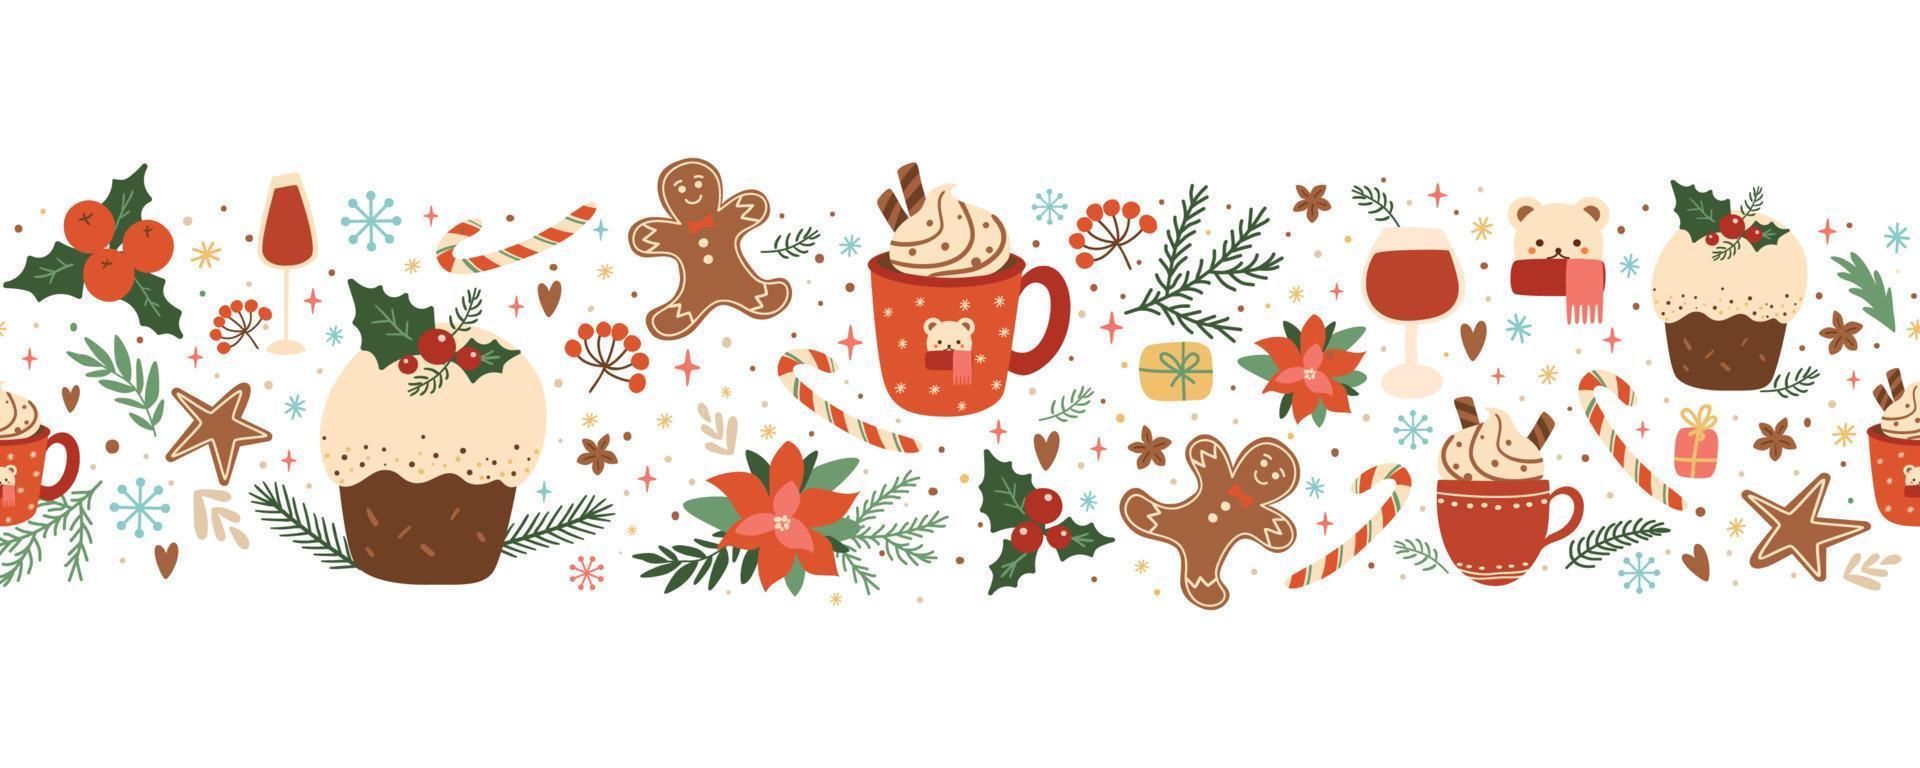 weihnachtskuchen, pudding, essen, kaffee, lebkuchen nahtlose grenze mit floralen dekorativen elementen des winterurlaubs. gebackenes weihnachtsdessert, heißes wintergetränk. horizontale Wiederholungsvektorillustration vektor